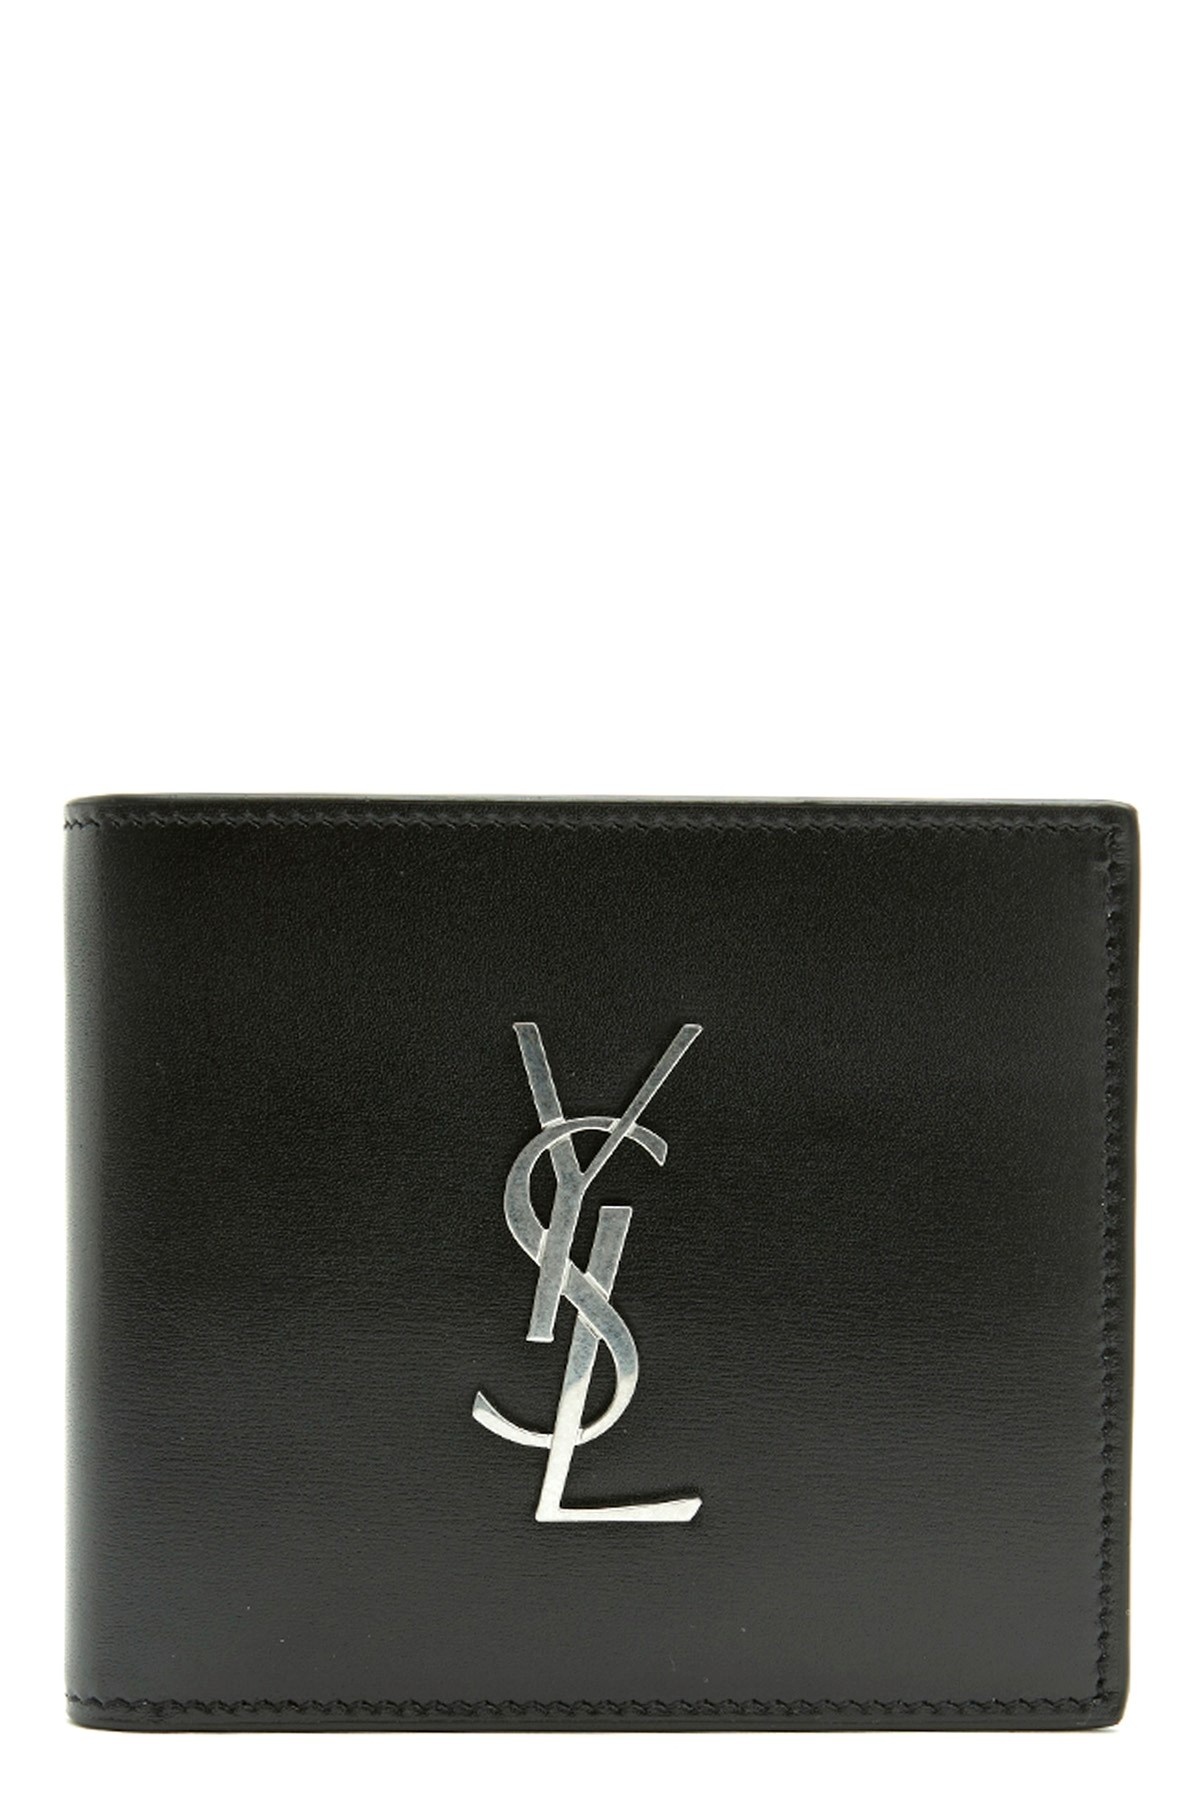 Logo wallet - 1